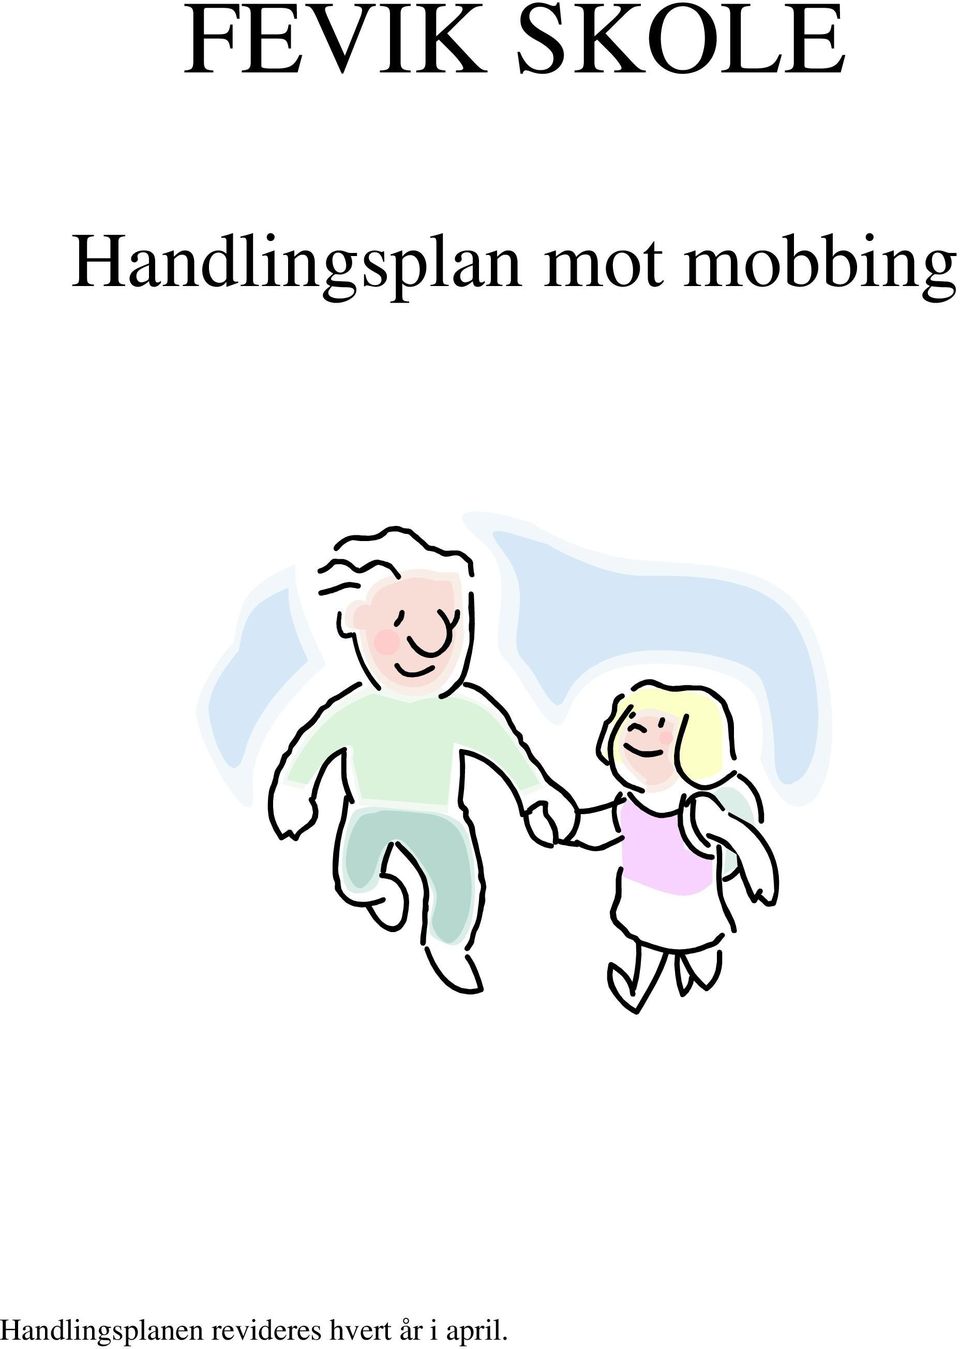 mobbing